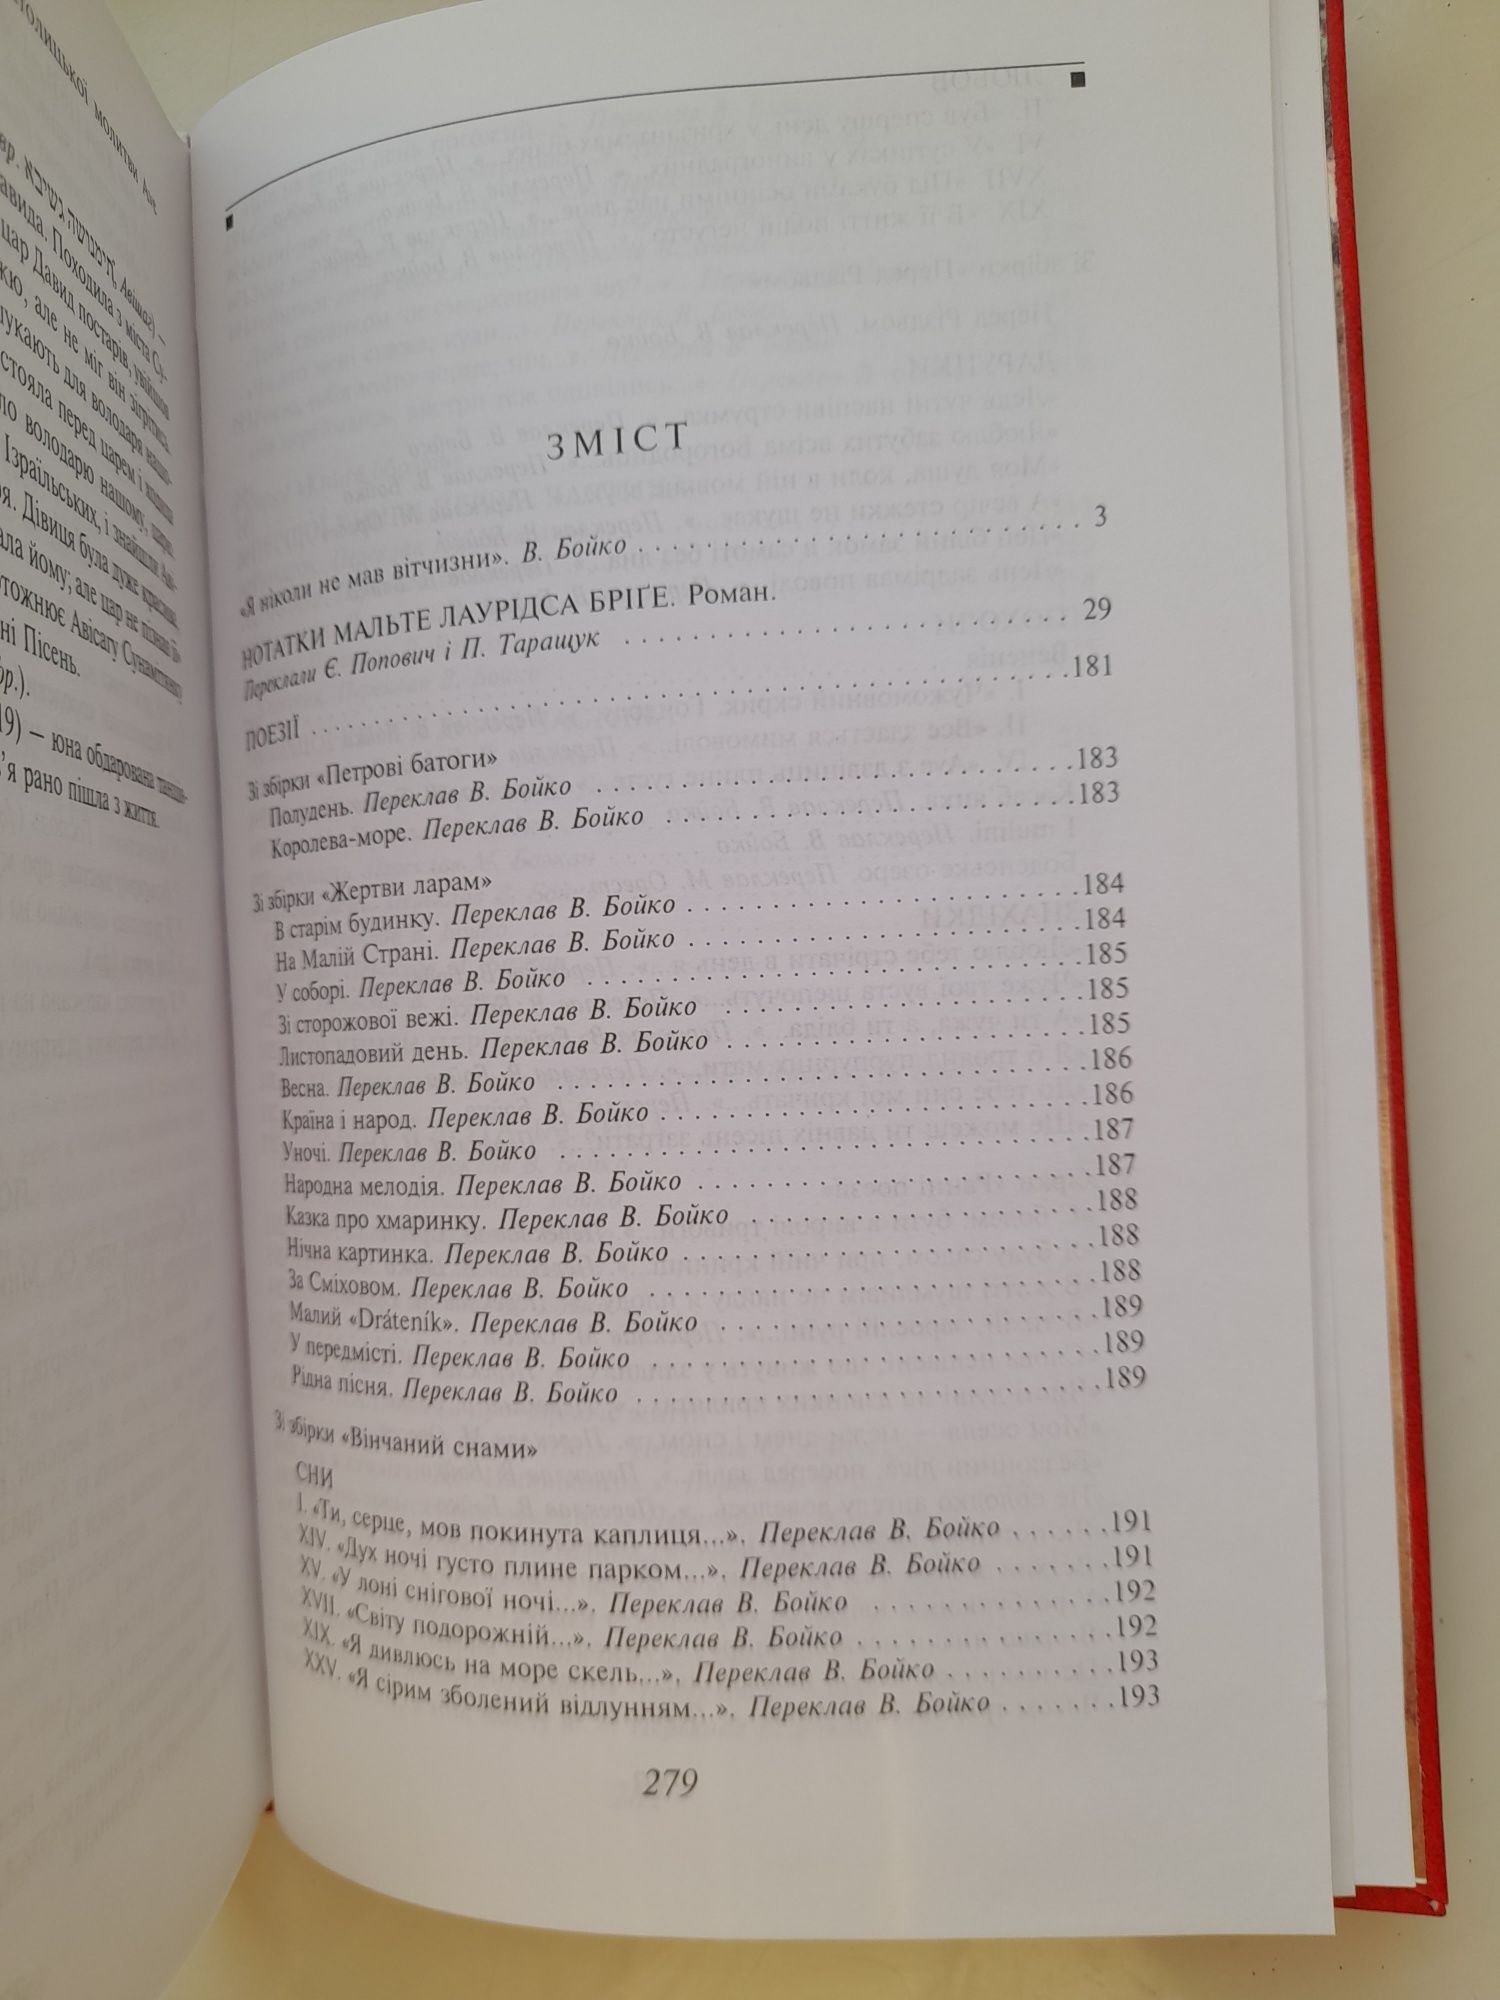 Рільке. Нотатки Мальте Лаурідса Бріге. Бібліотека світової літератури.